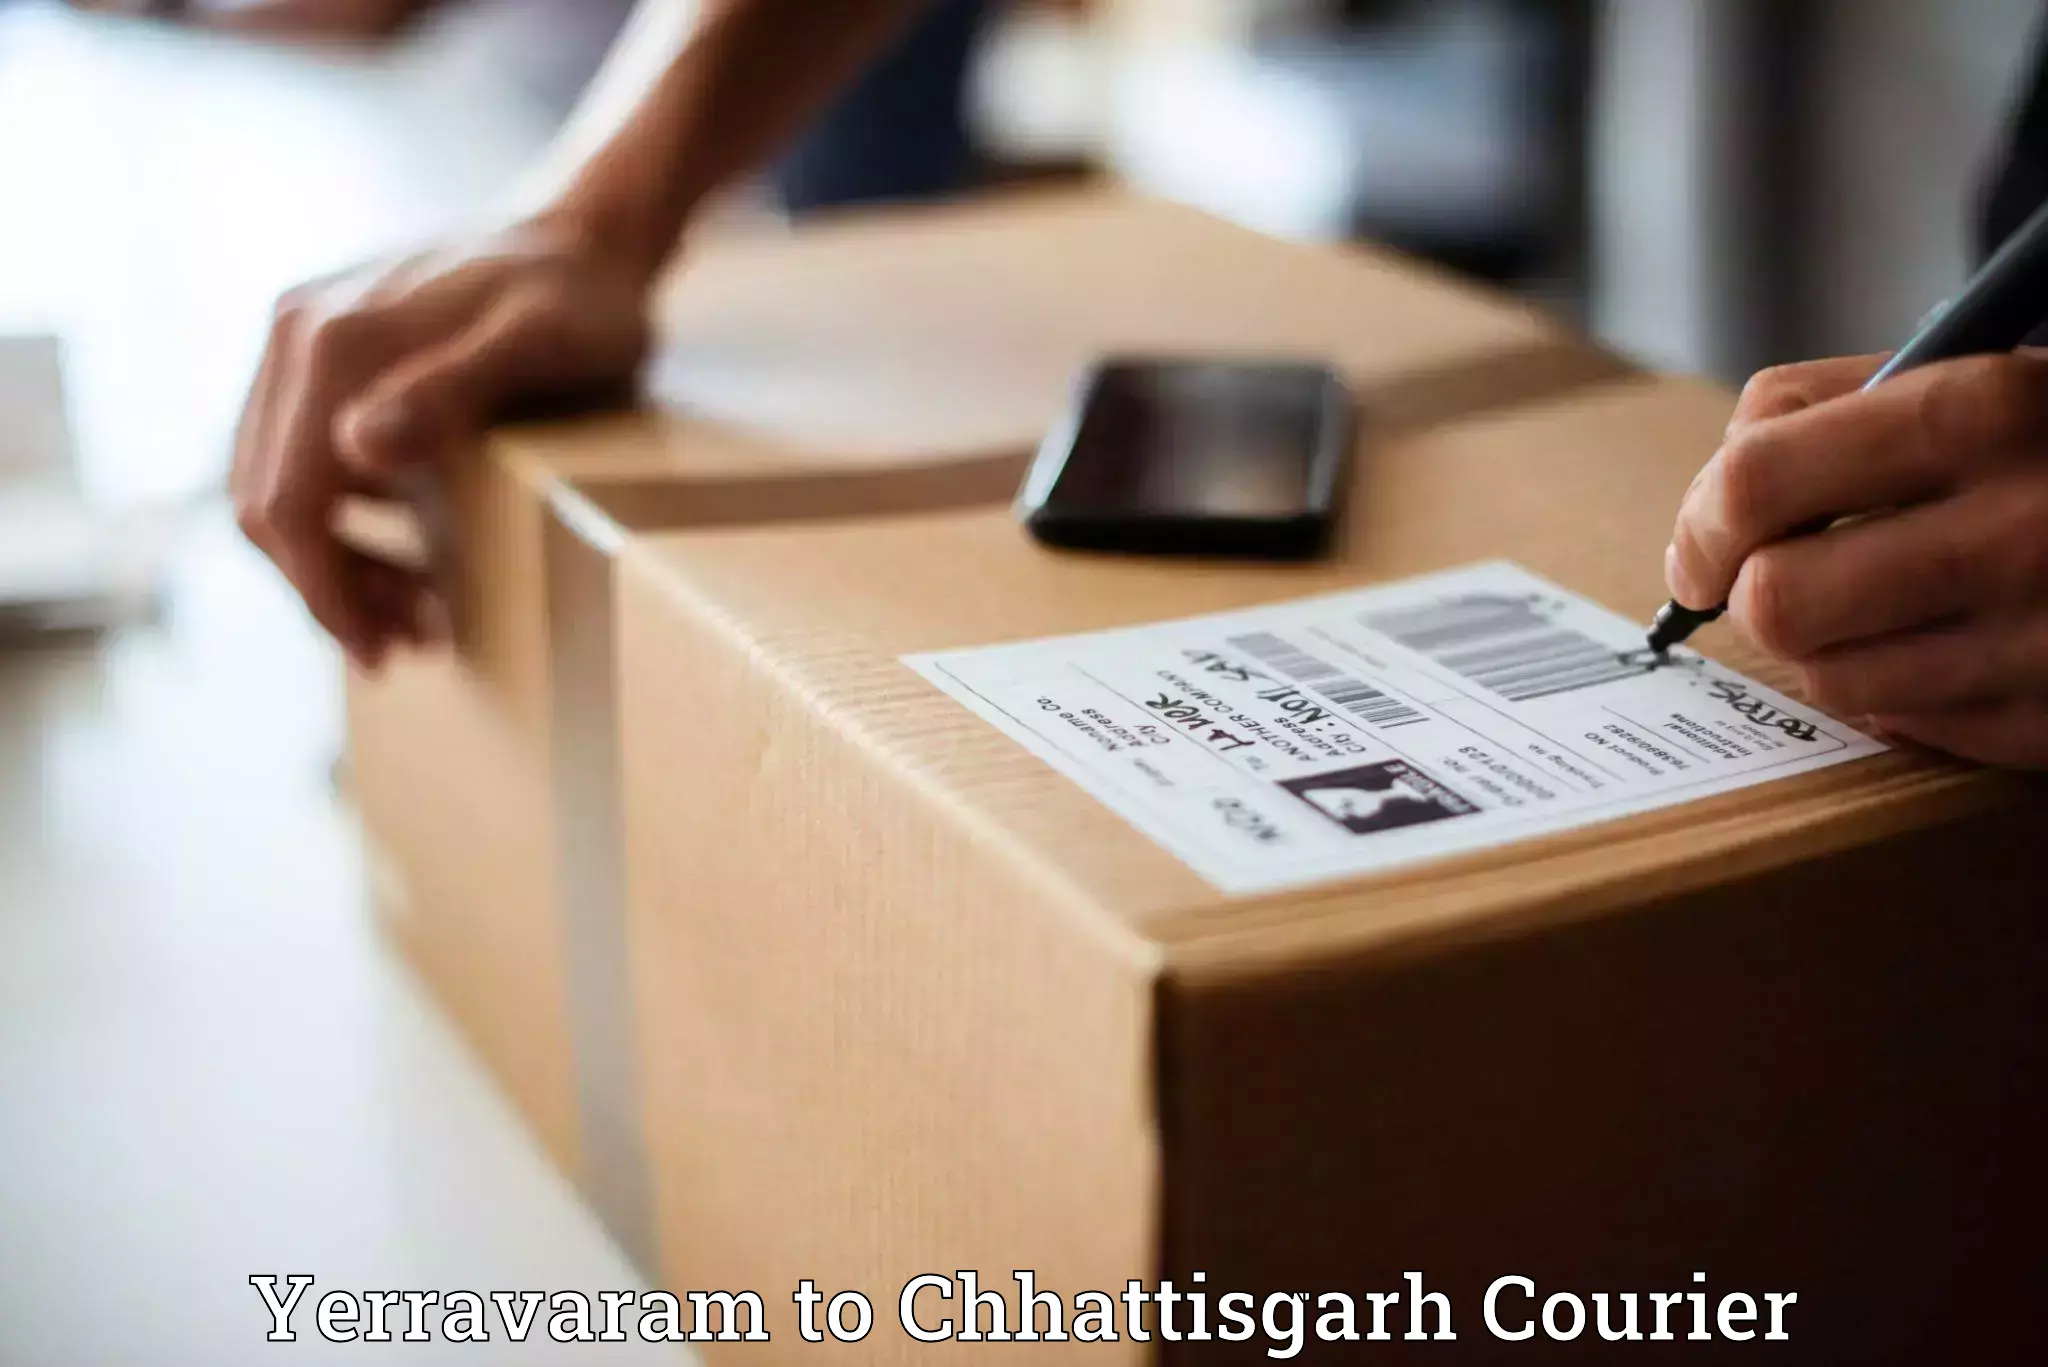 International courier rates Yerravaram to Korea Chhattisgarh